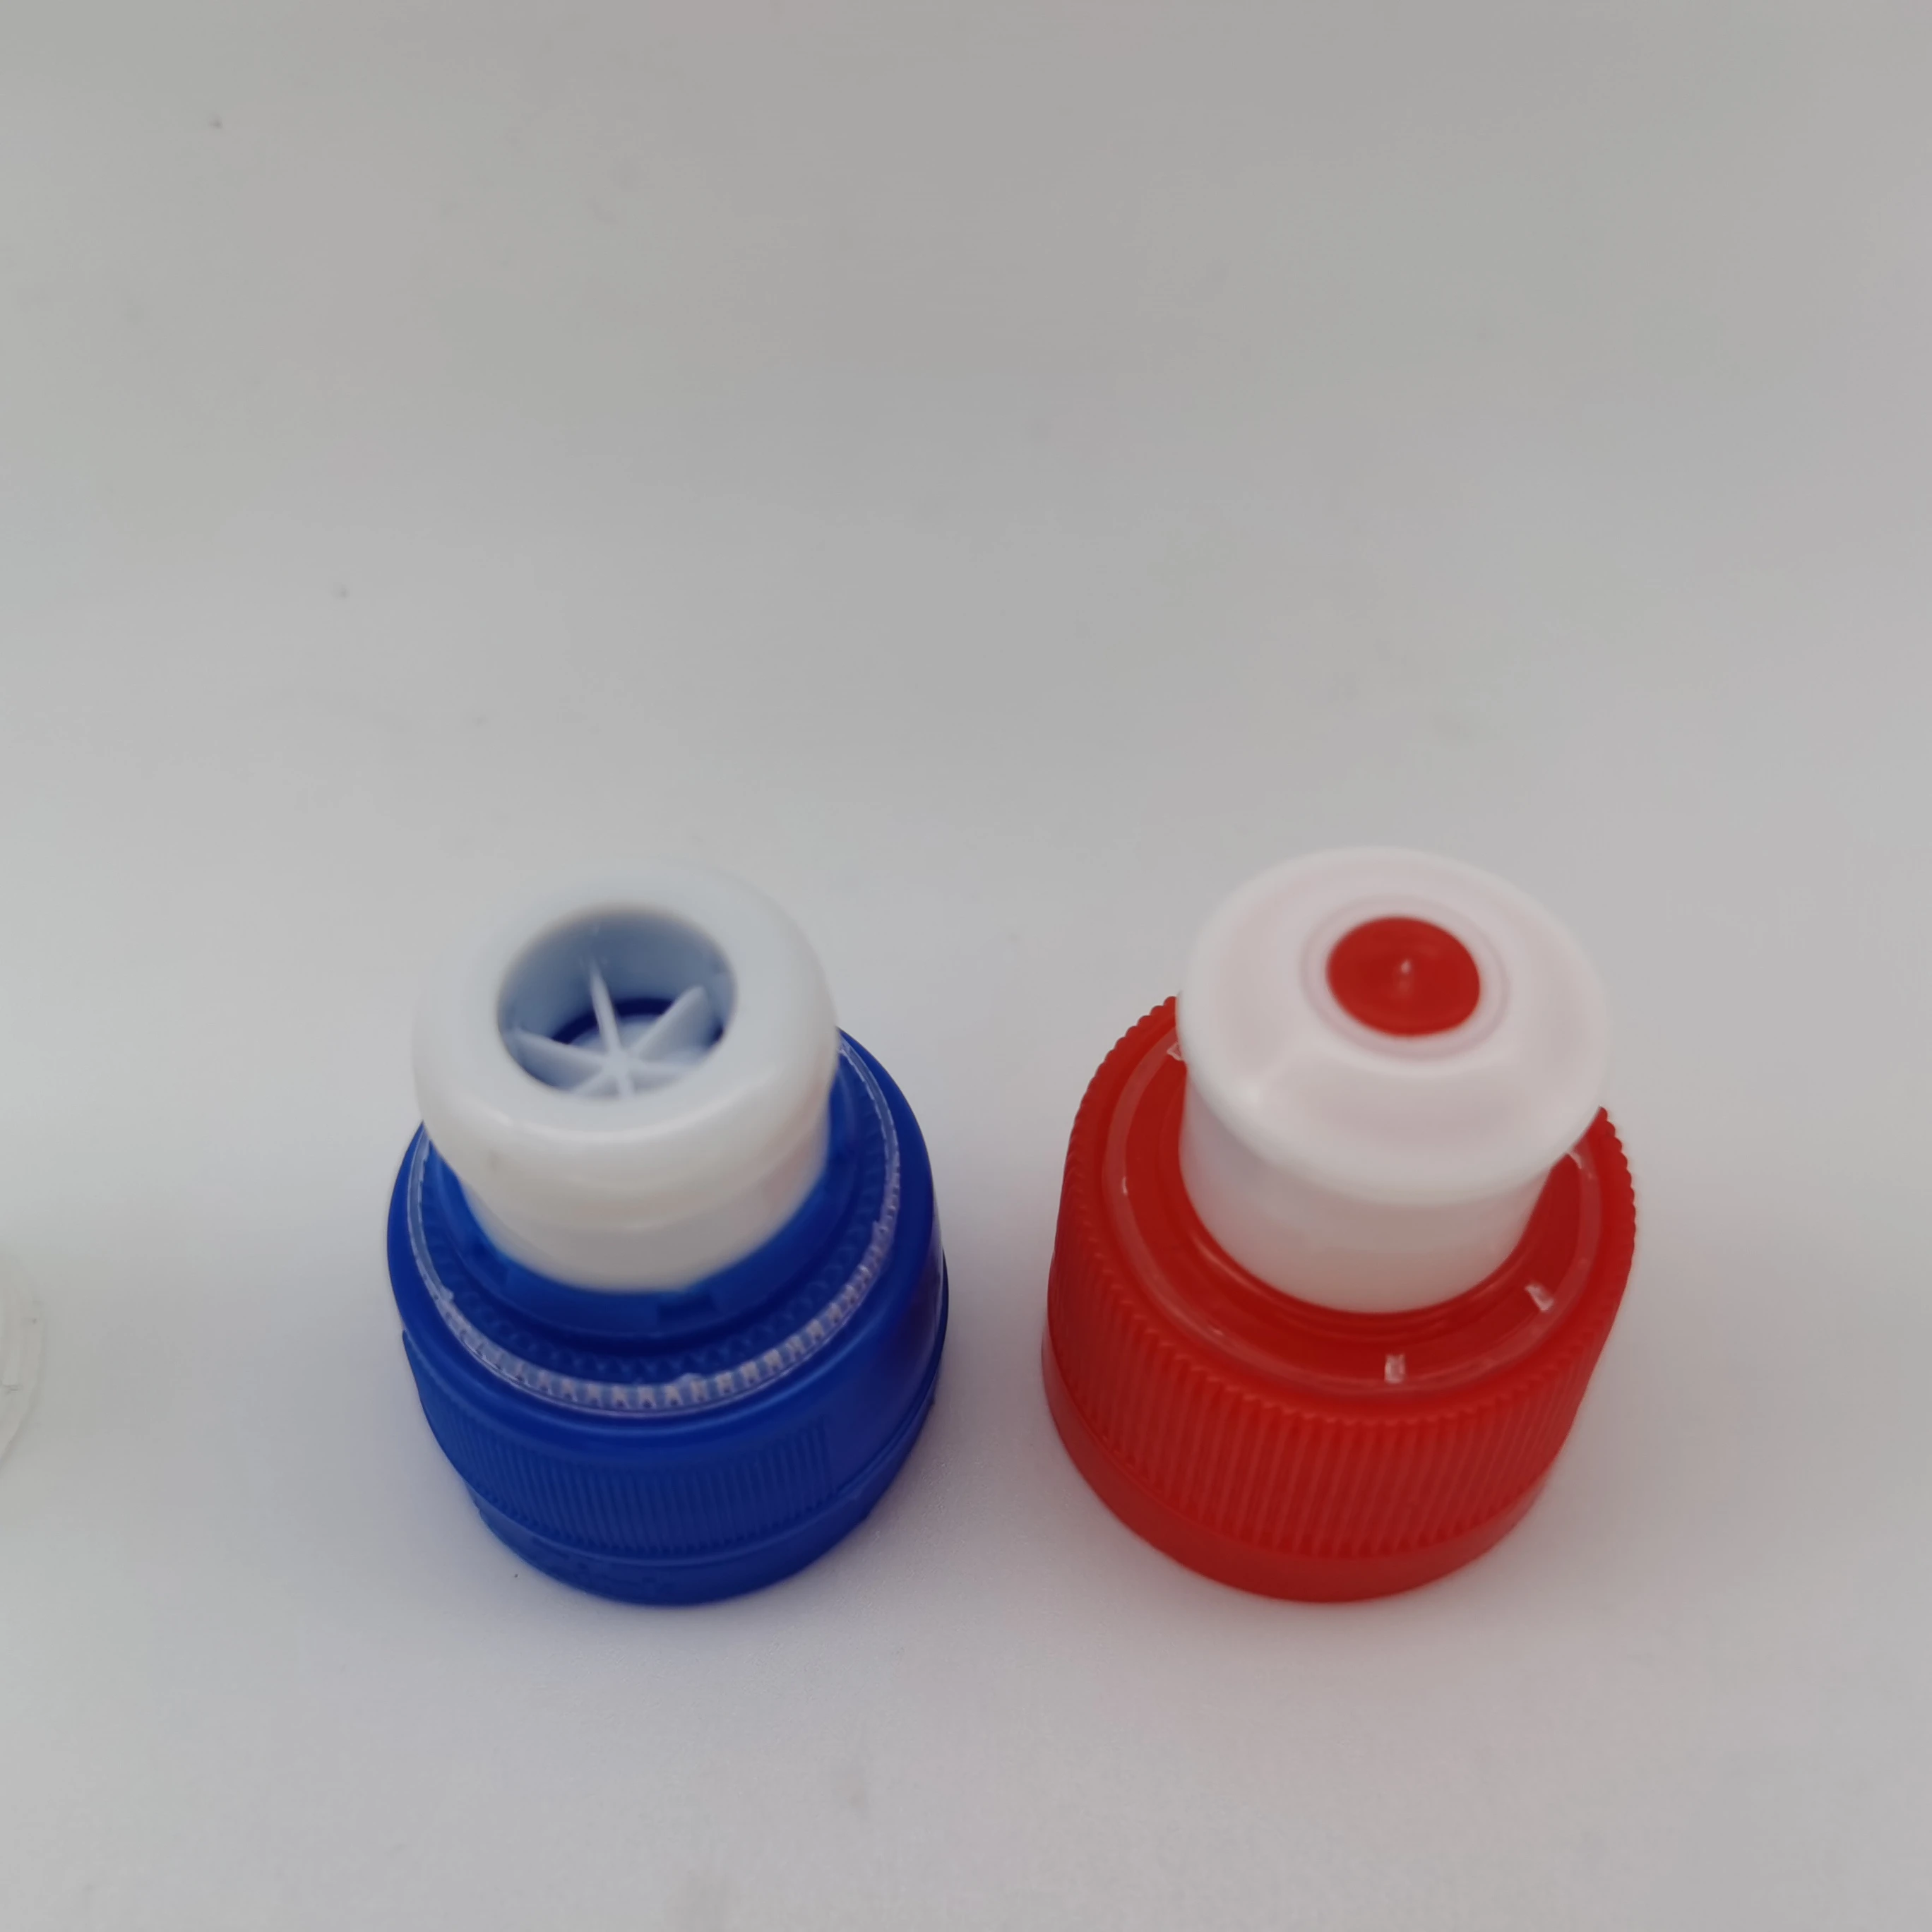 28/410 red tamper evident flip top cap for water bottle/drink bottle